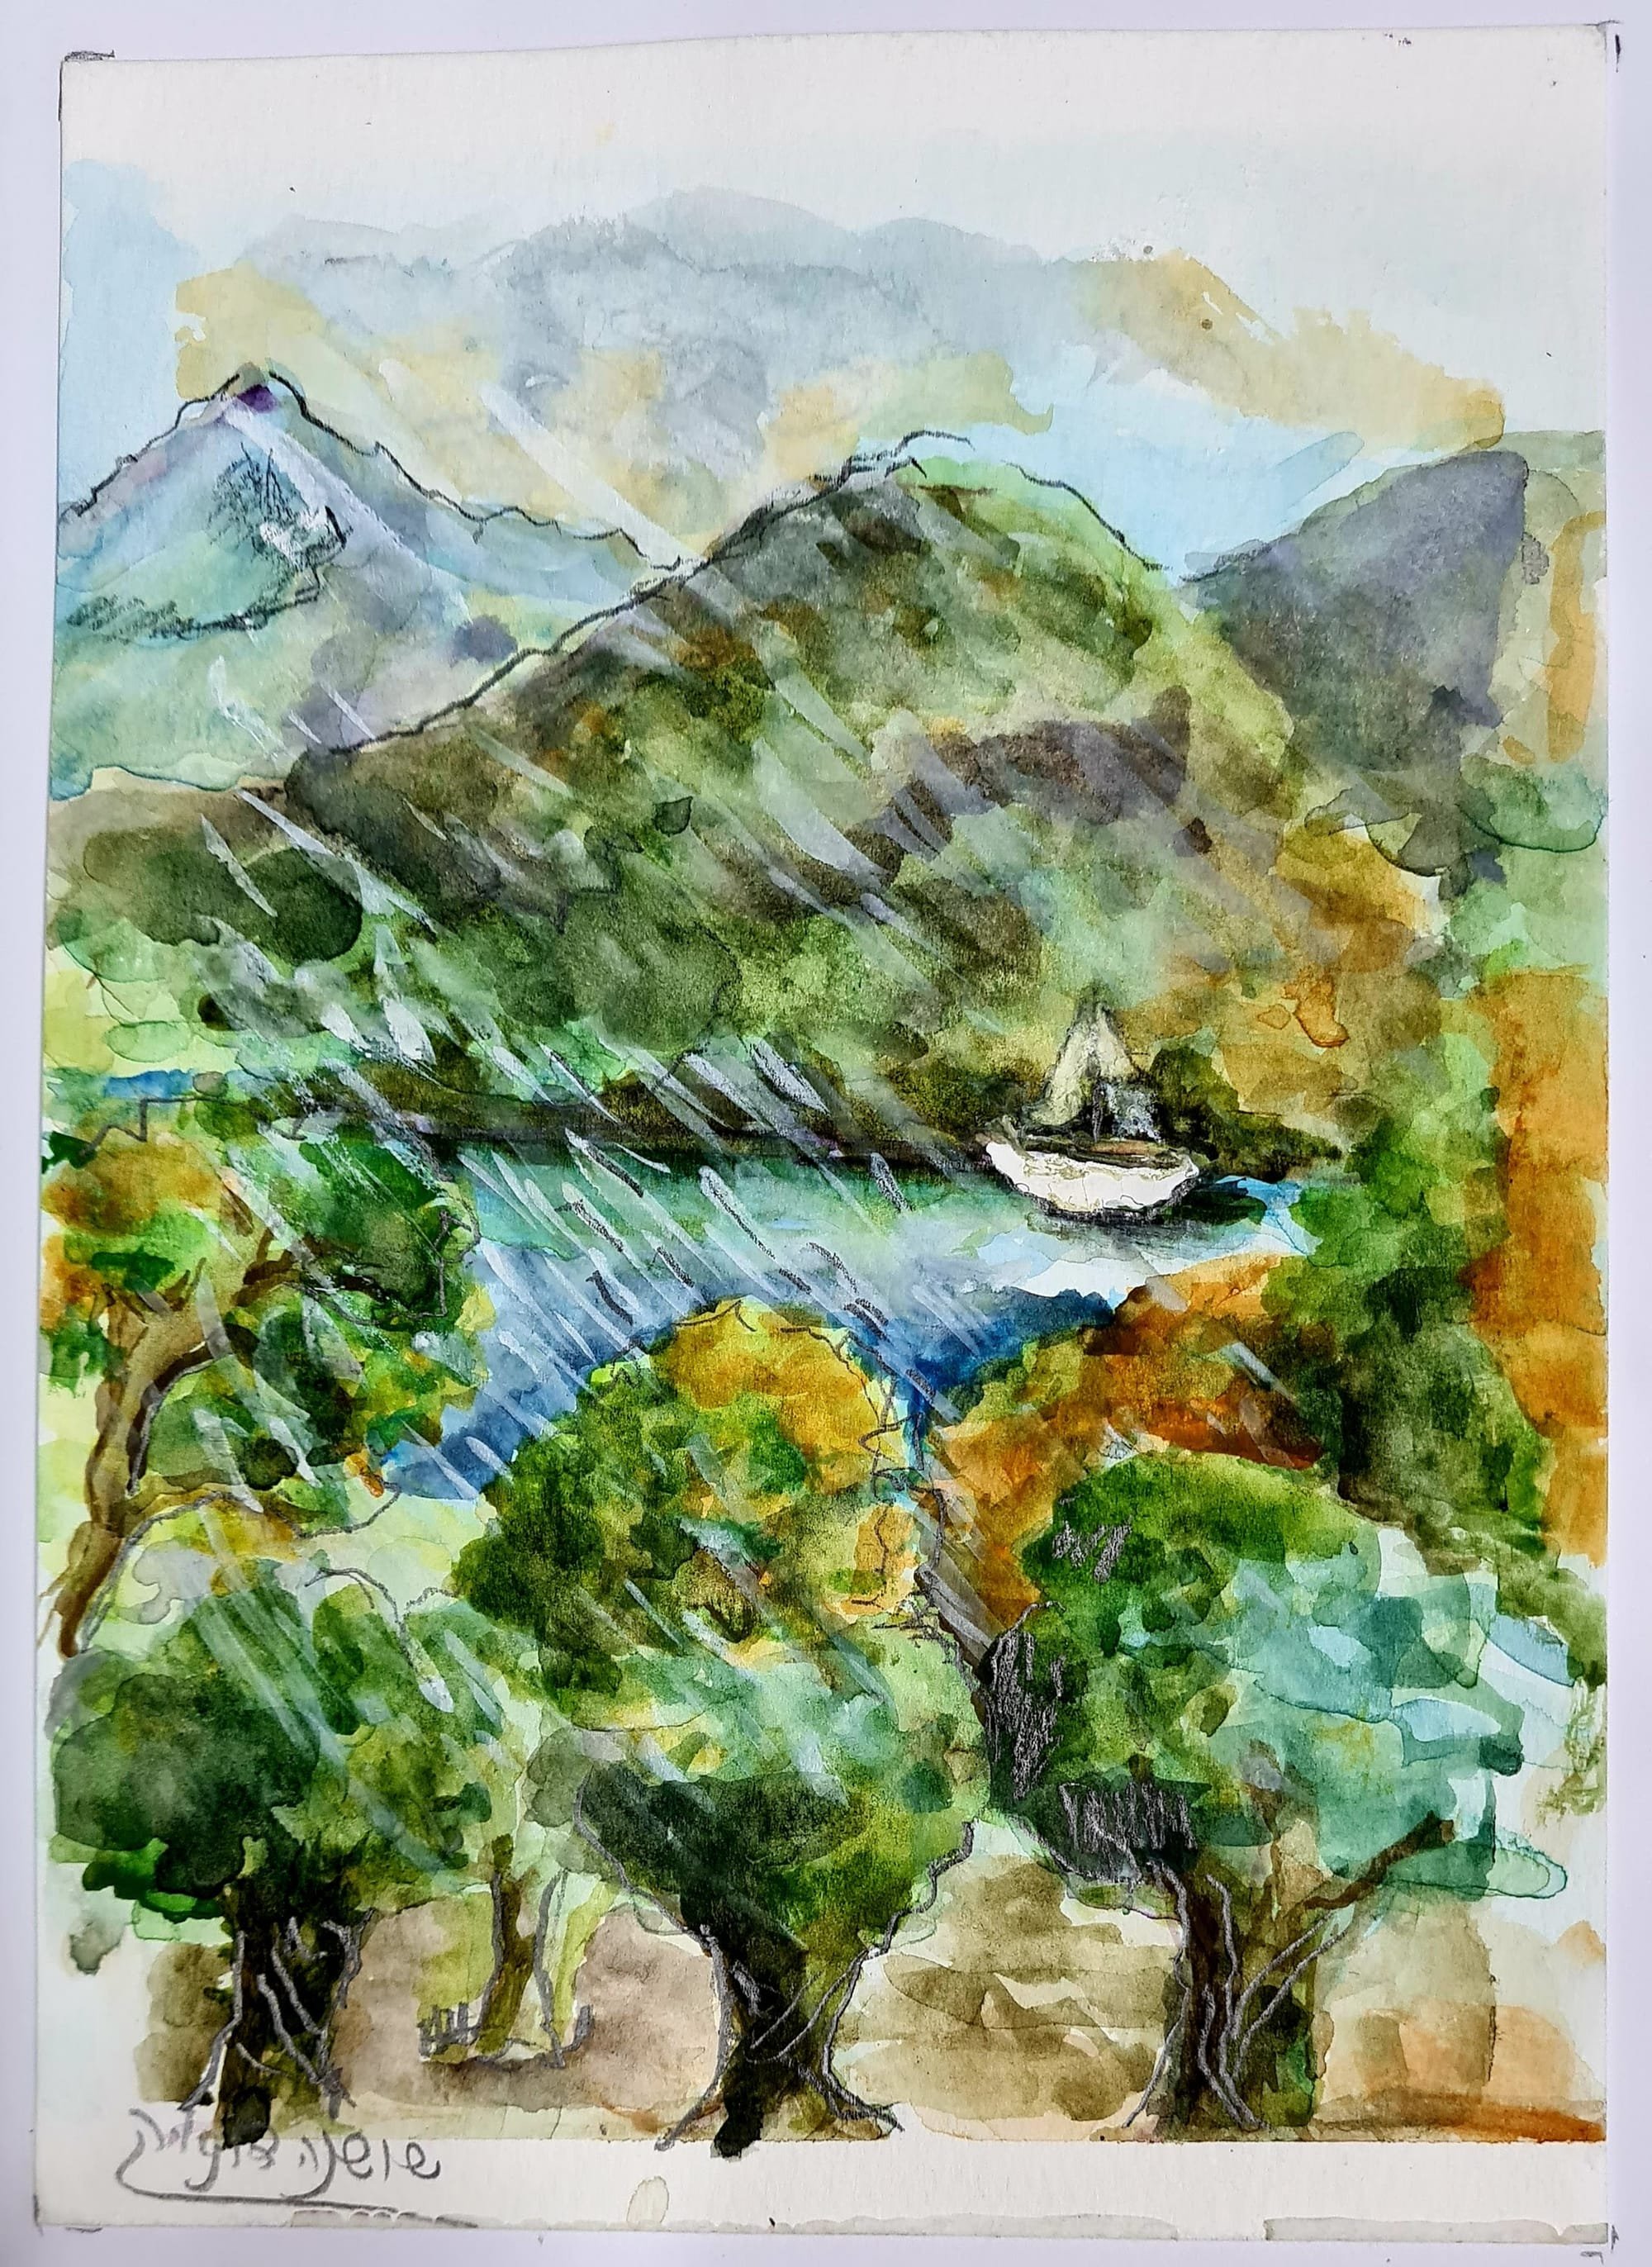 ציור מס. 49 - "גשם על האגם מס. 2"